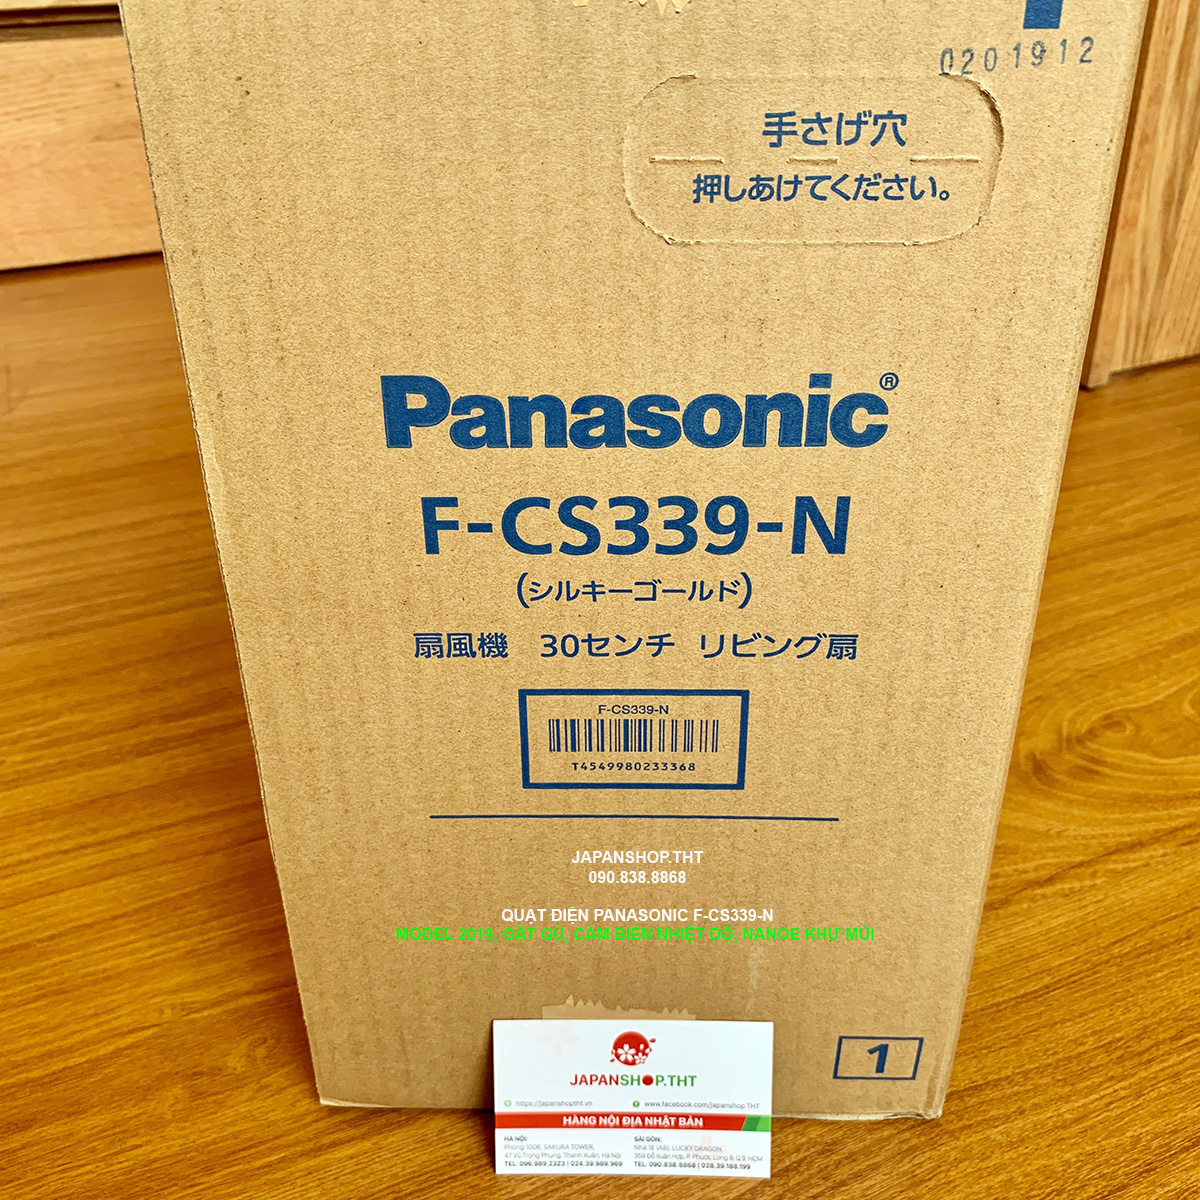 QUẠT ĐIỆN PANASONIC F-CS339-N